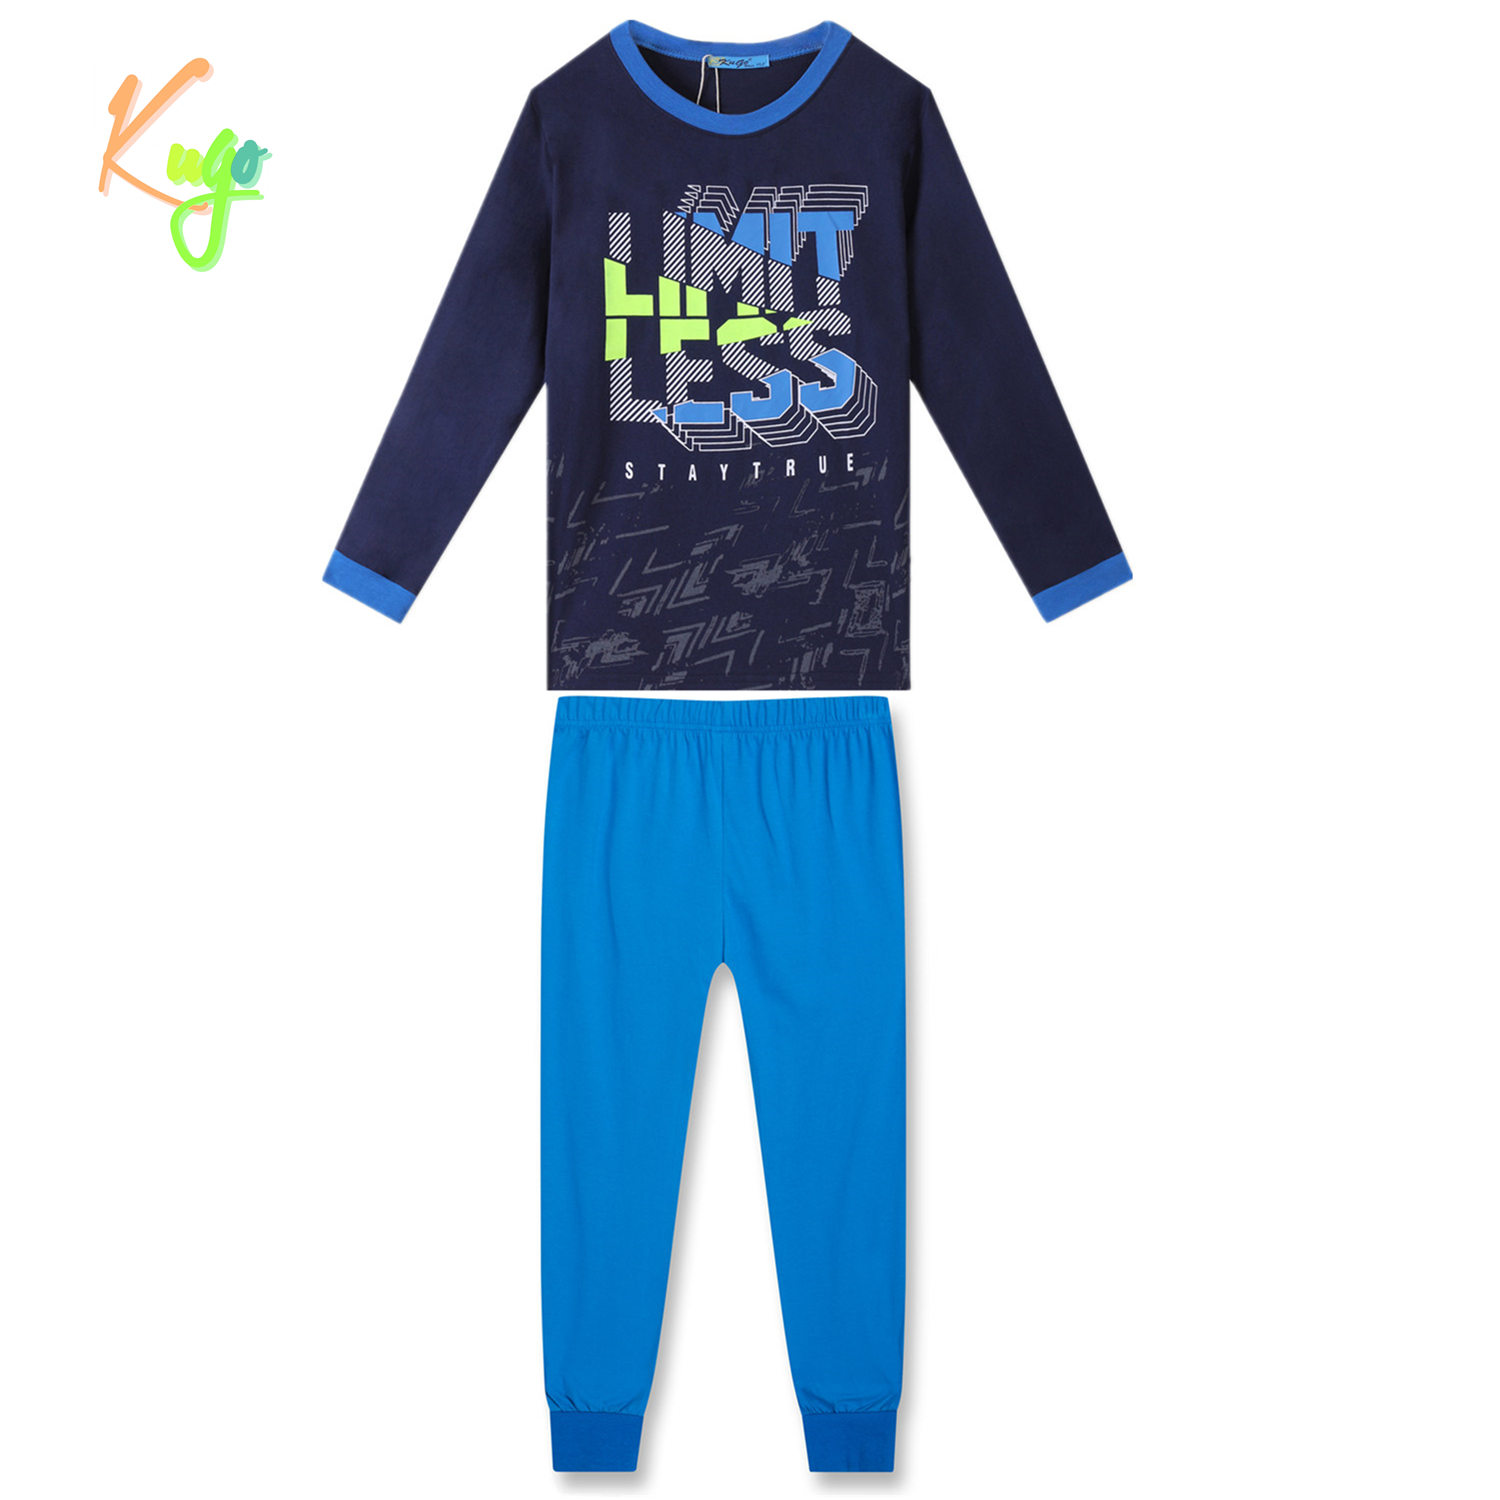 Chlapecké pyžamo - KUGO MP3783, tmavě modrá Barva: Modrá tmavě, Velikost: 152